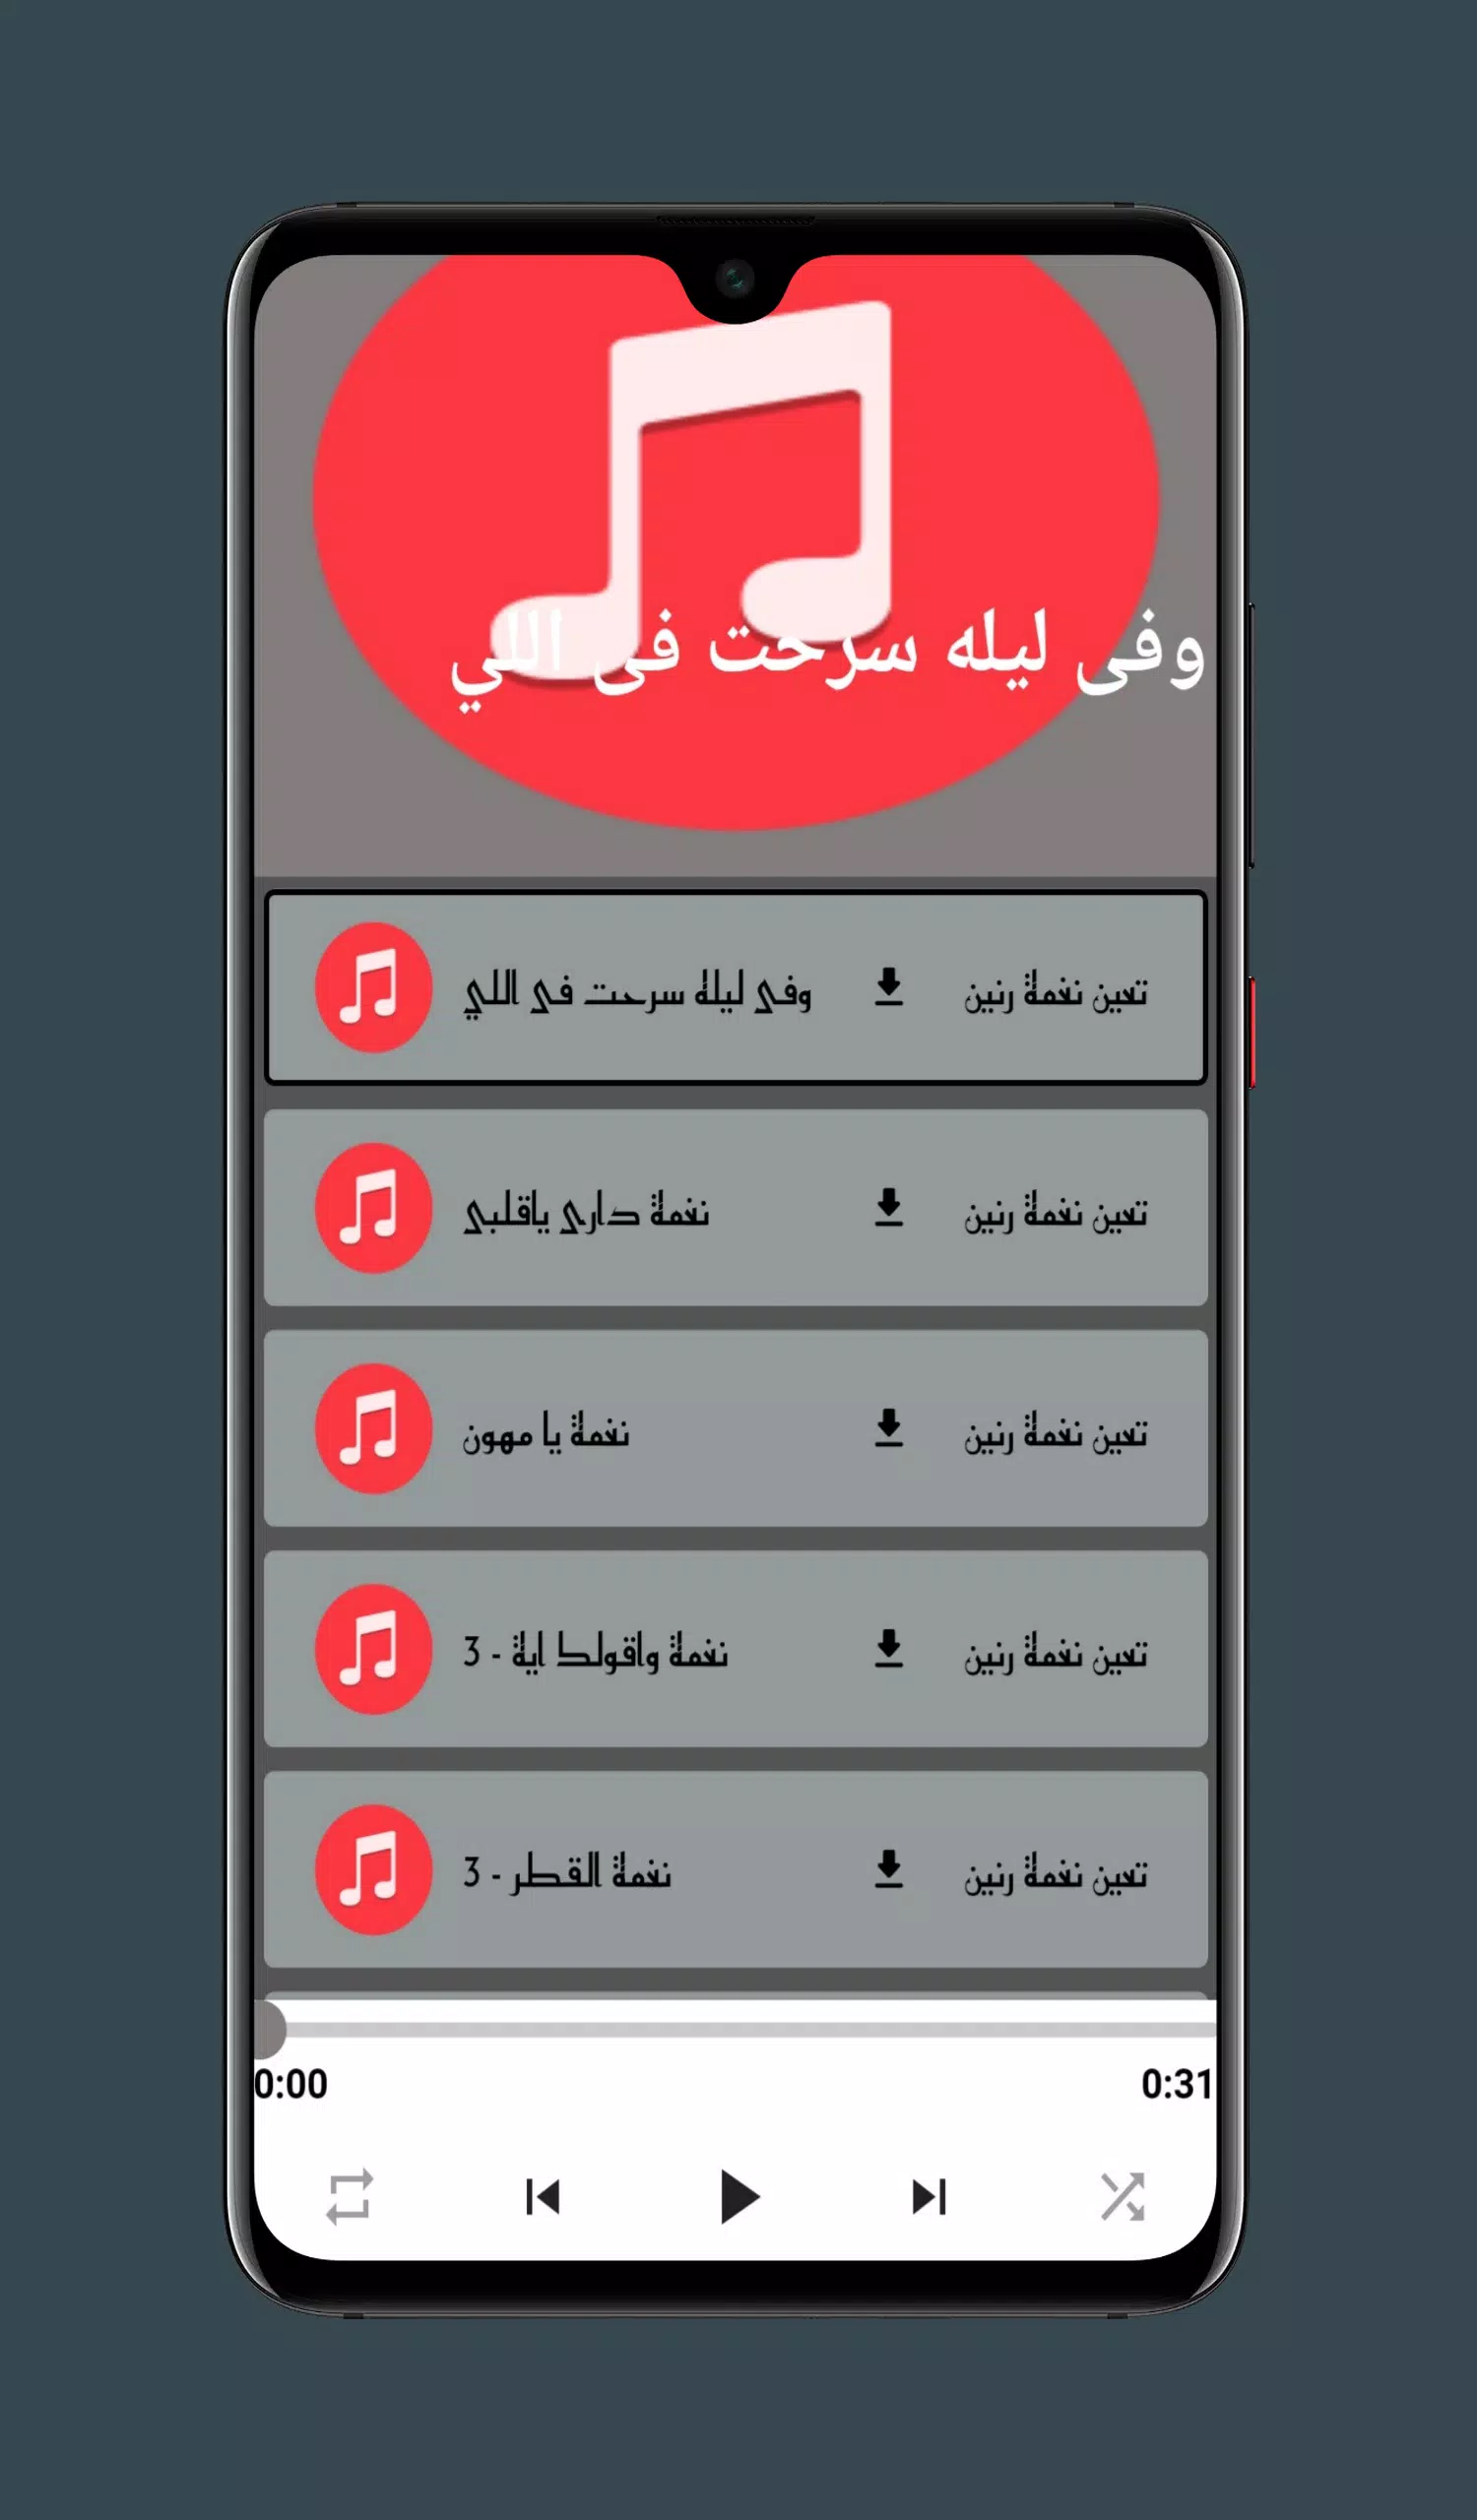 نغمات للموبايل - حمزه نمرة APK for Android Download